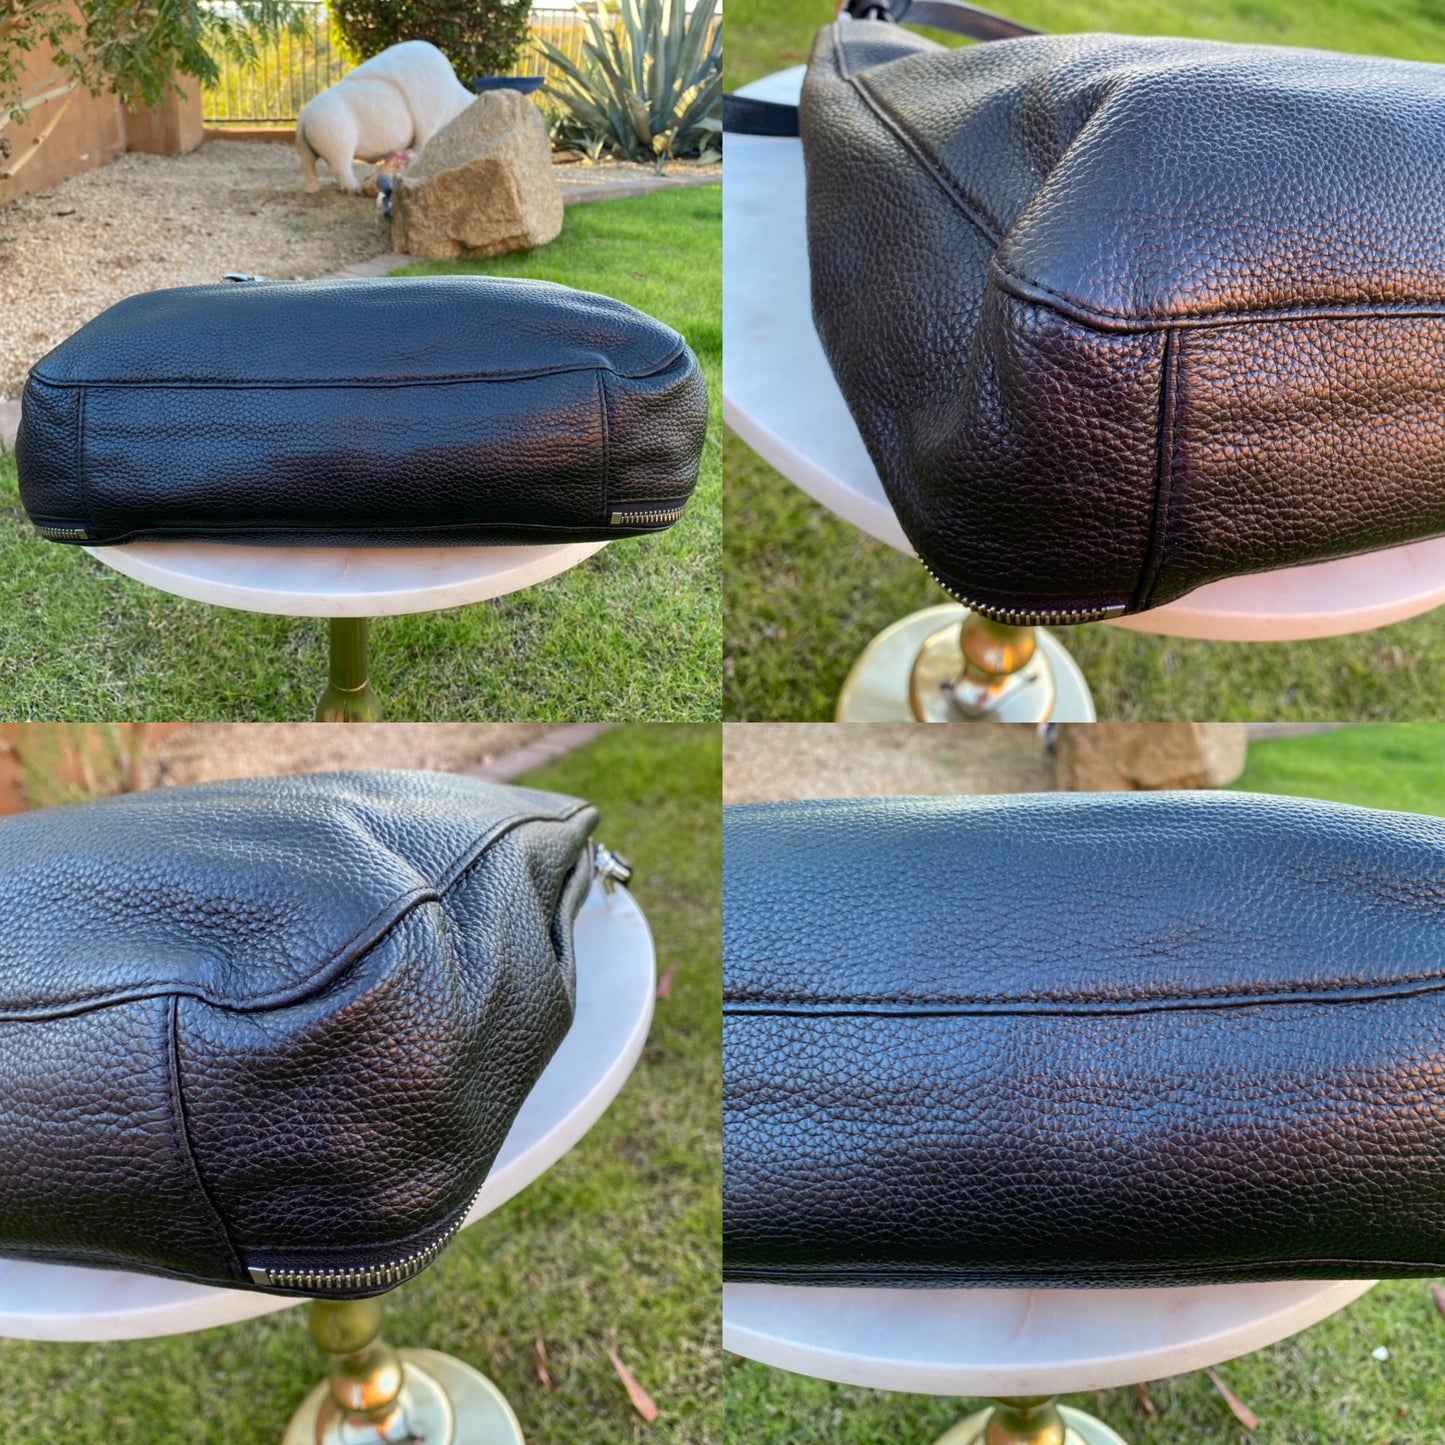 Michael Kors Large Pebbled Leather Shoulder Bag